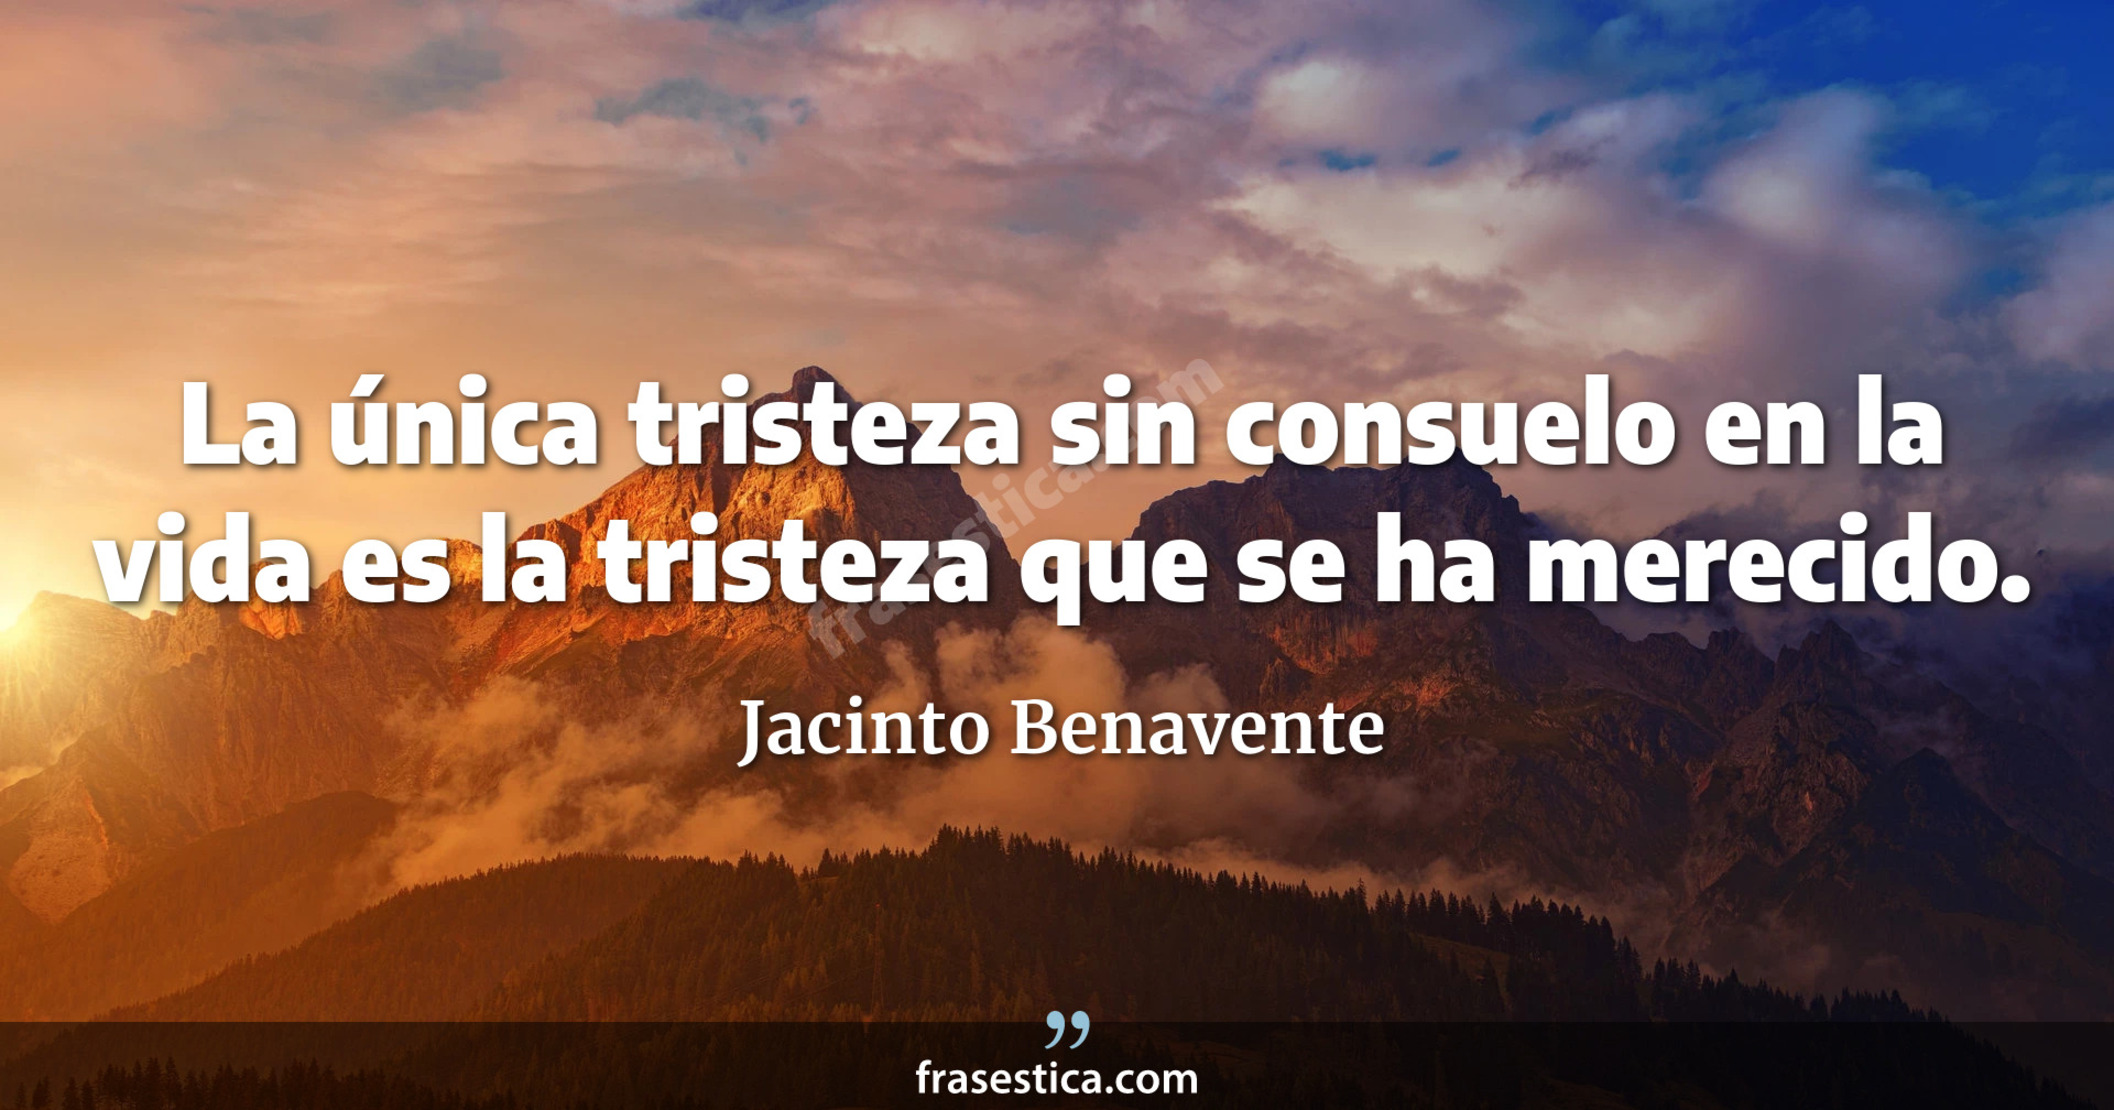 La única tristeza sin consuelo en la vida es la tristeza que se ha merecido. - Jacinto Benavente